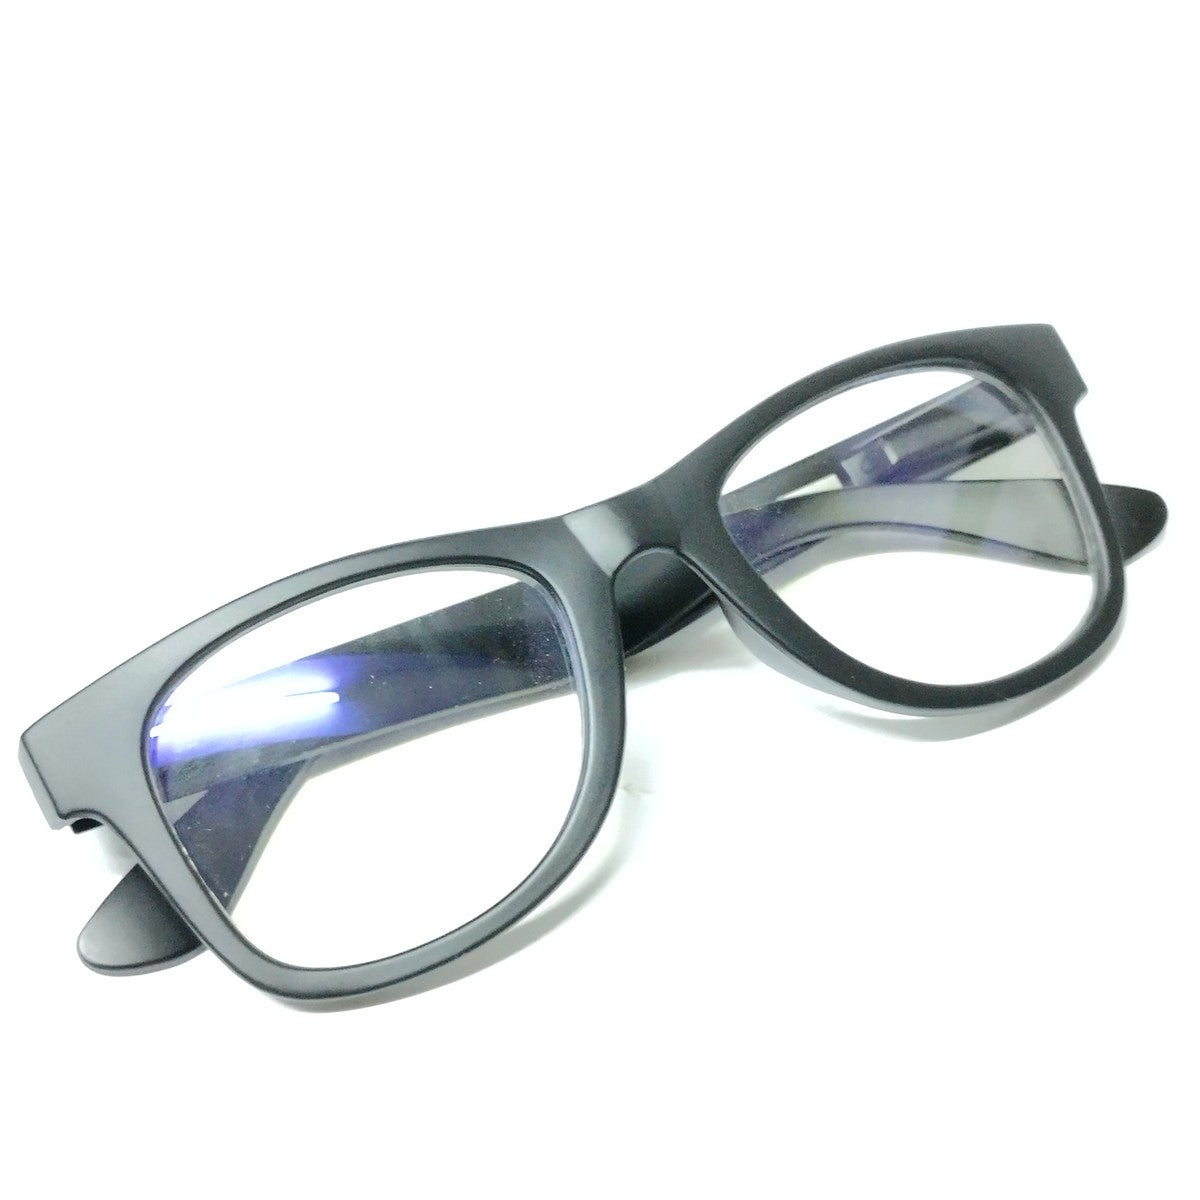 Premium Matt Black Progressive Glasses for Computers Multifocal Reading Glasses for Men Women